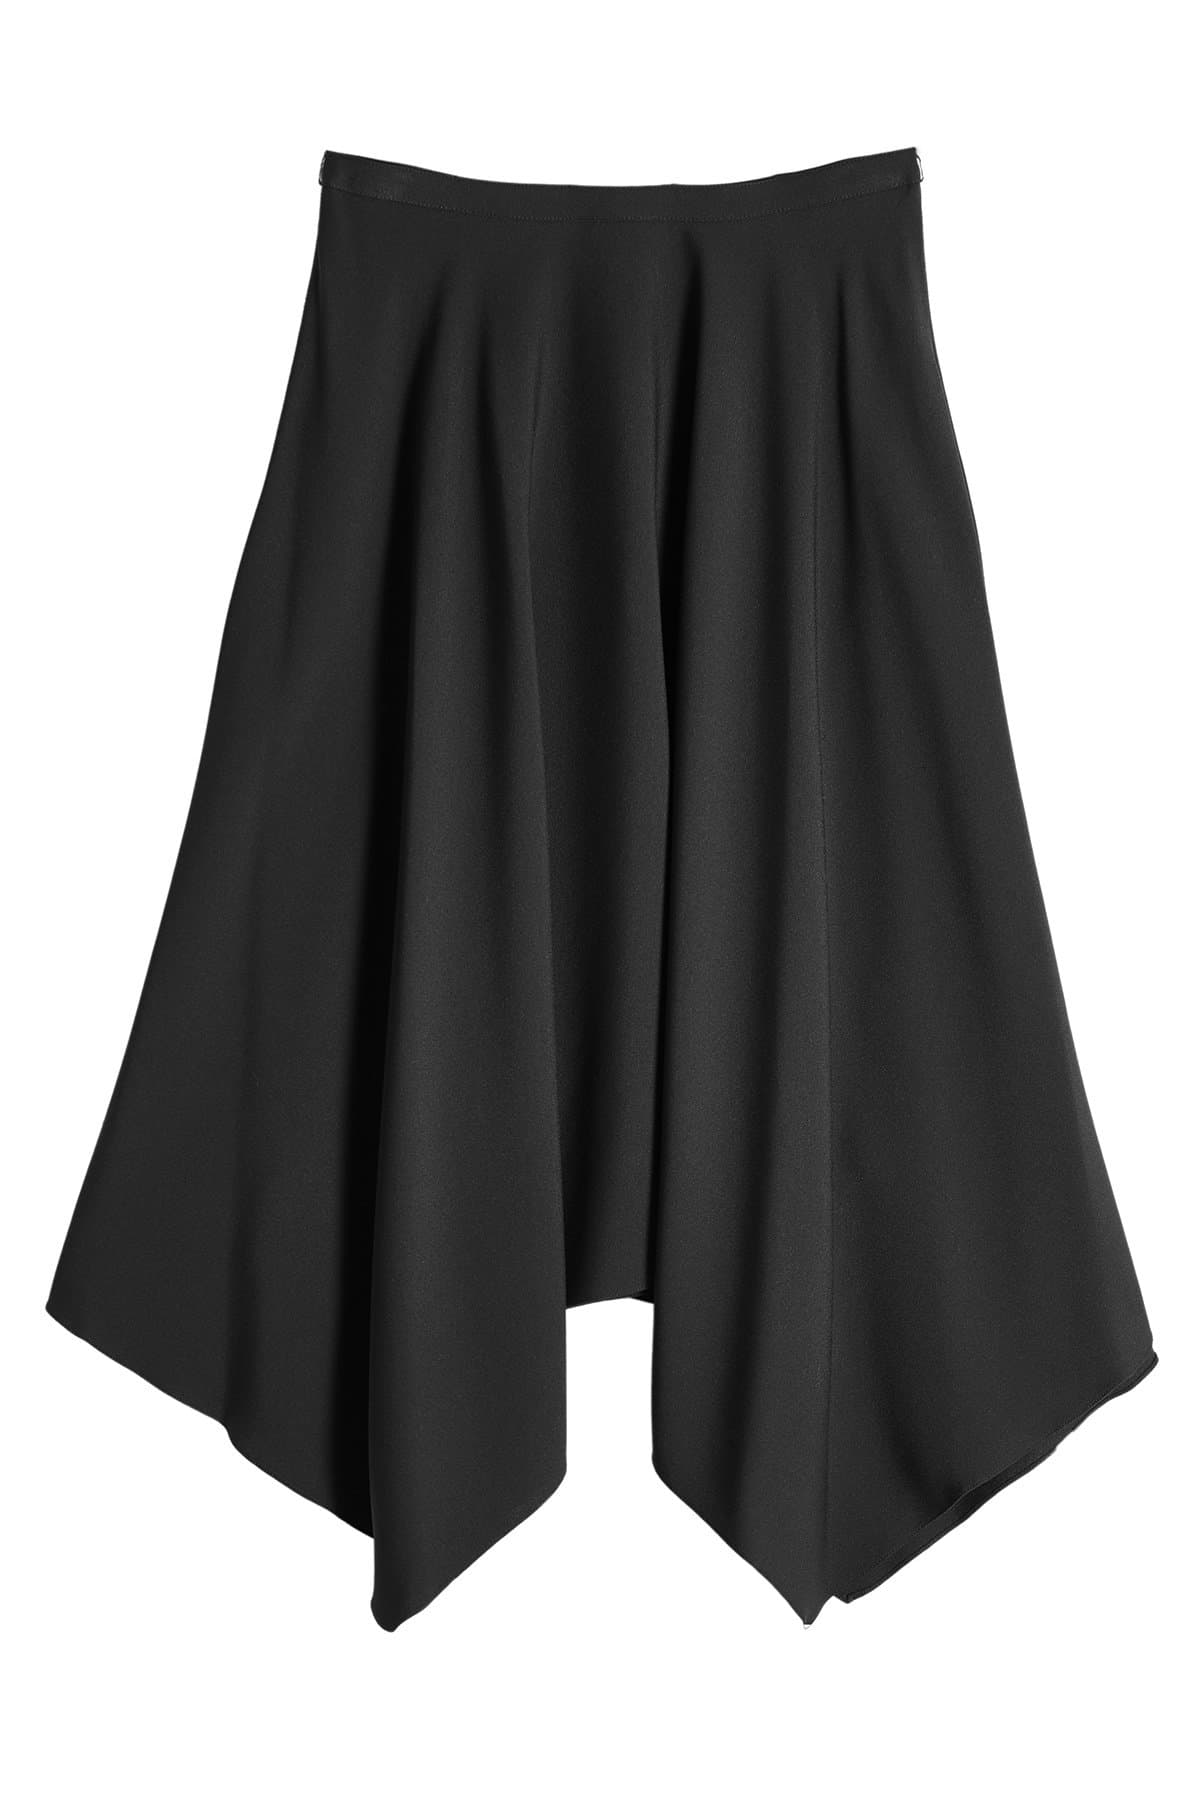 Midi Skirt with Handkerchief Hem by Nina Ricci